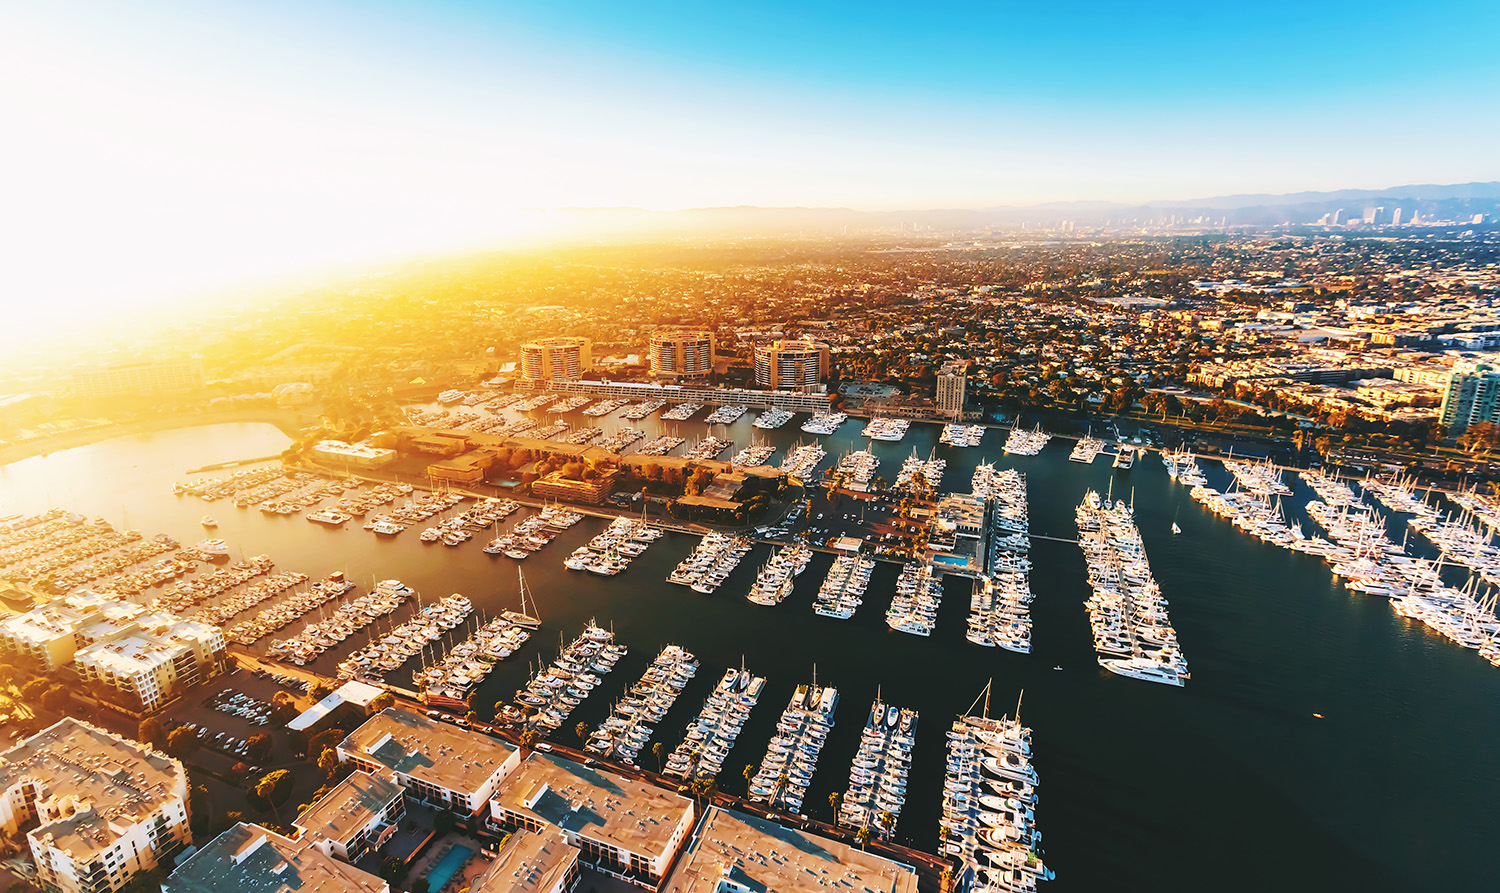 Marina del Rey - Los Angeles, CA